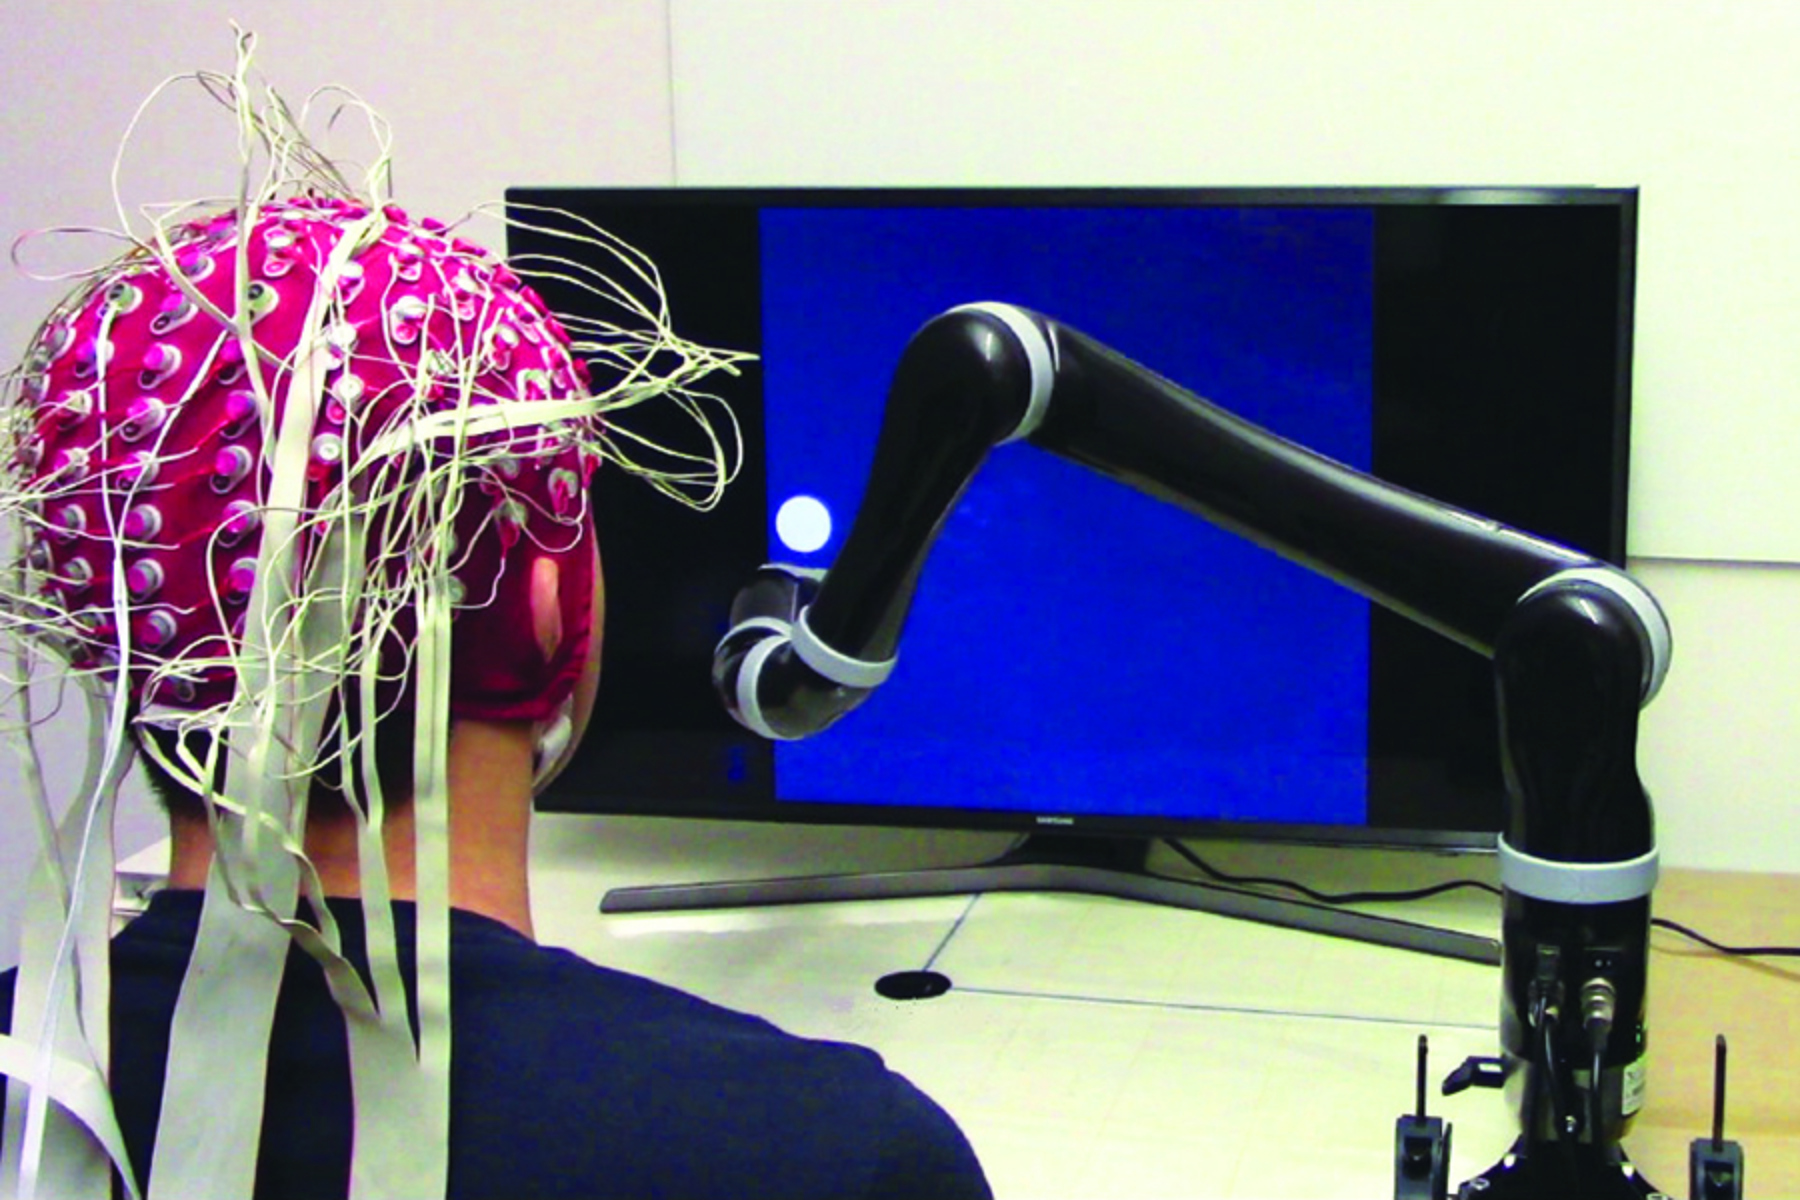 Ρομποτική: Αισθητήρας που επιτρέπει τον έλεγχο του ρομπότ από το μυαλό